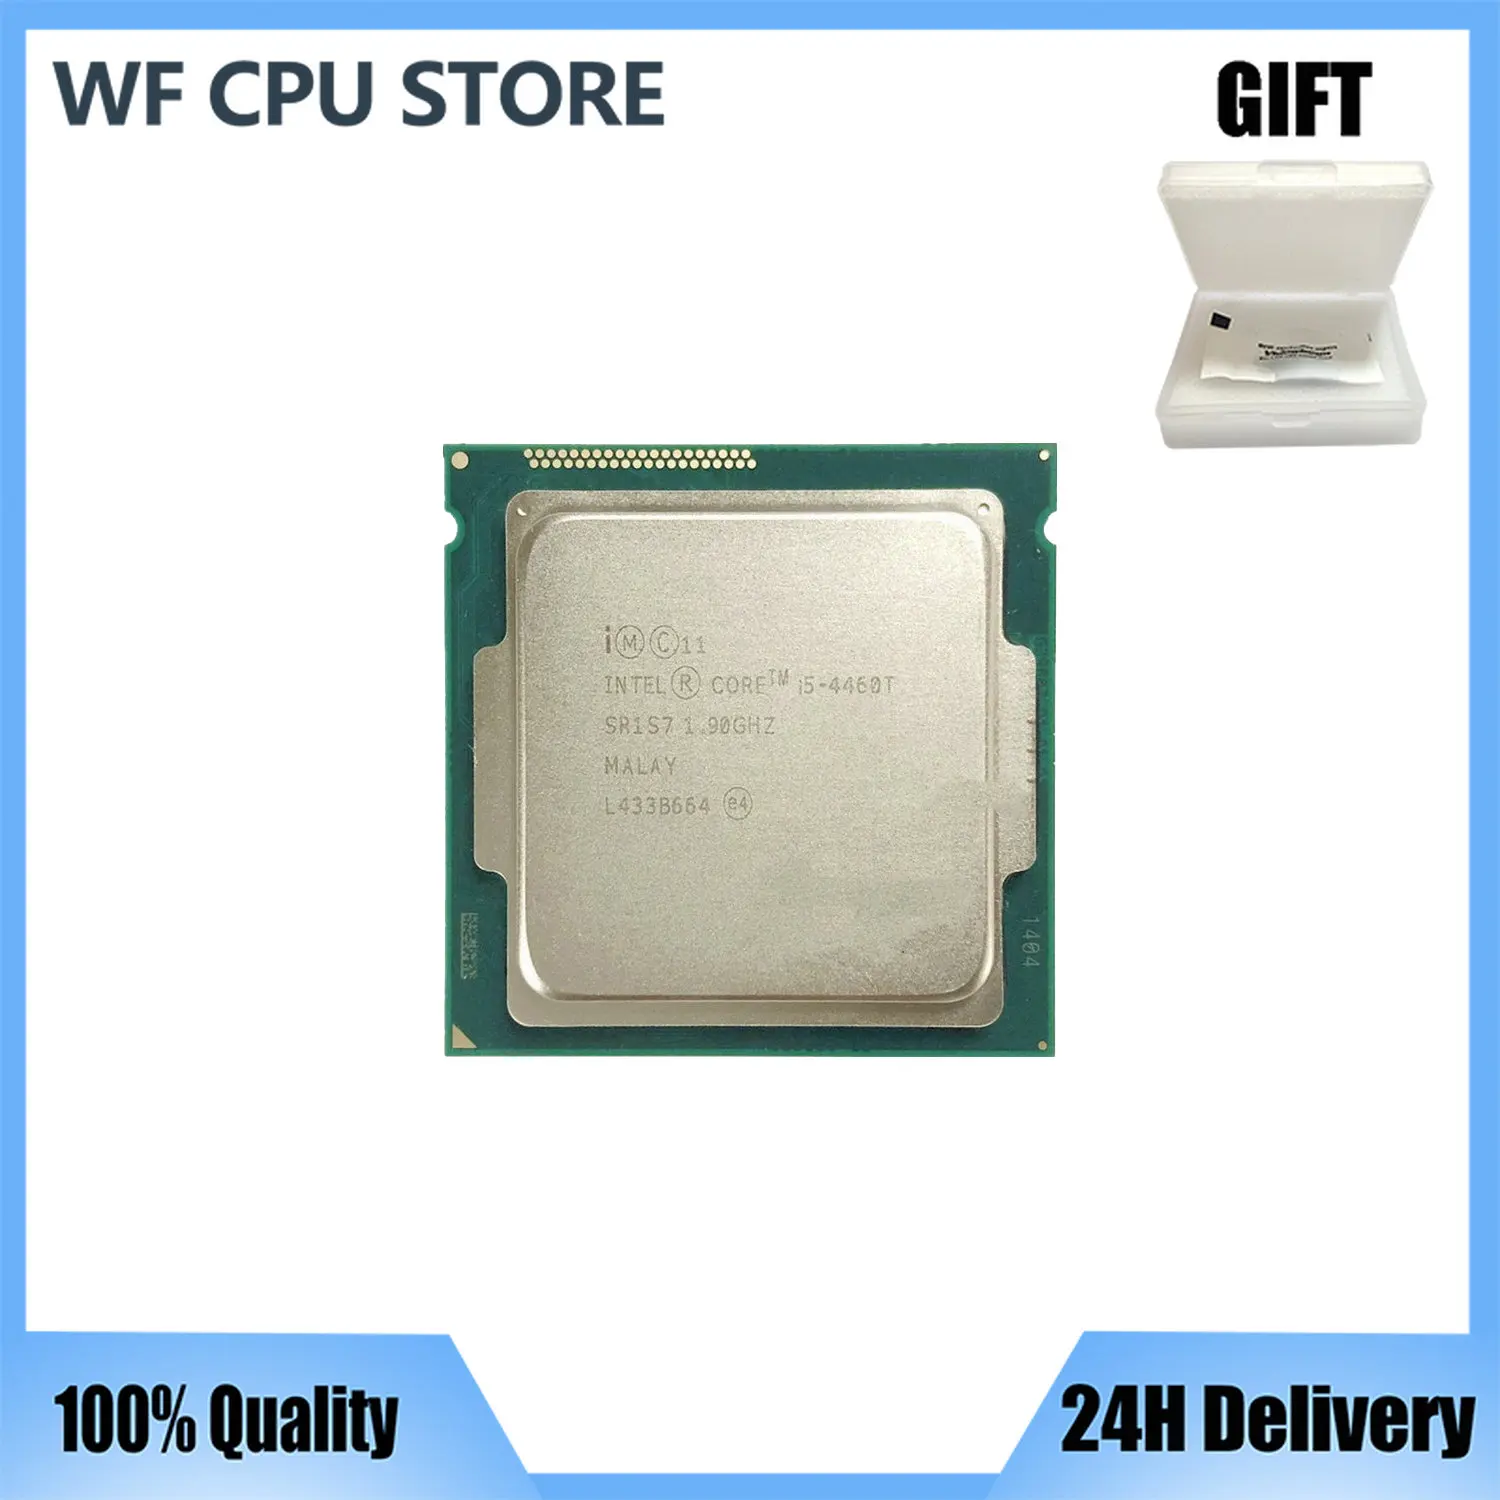 

Процессор Intel Core i5-4460T i5 4460T 1,9 ГГц четырехъядерный четырехпоточный ЦПУ Процессор 6 Мб 35 Вт LGA 1150